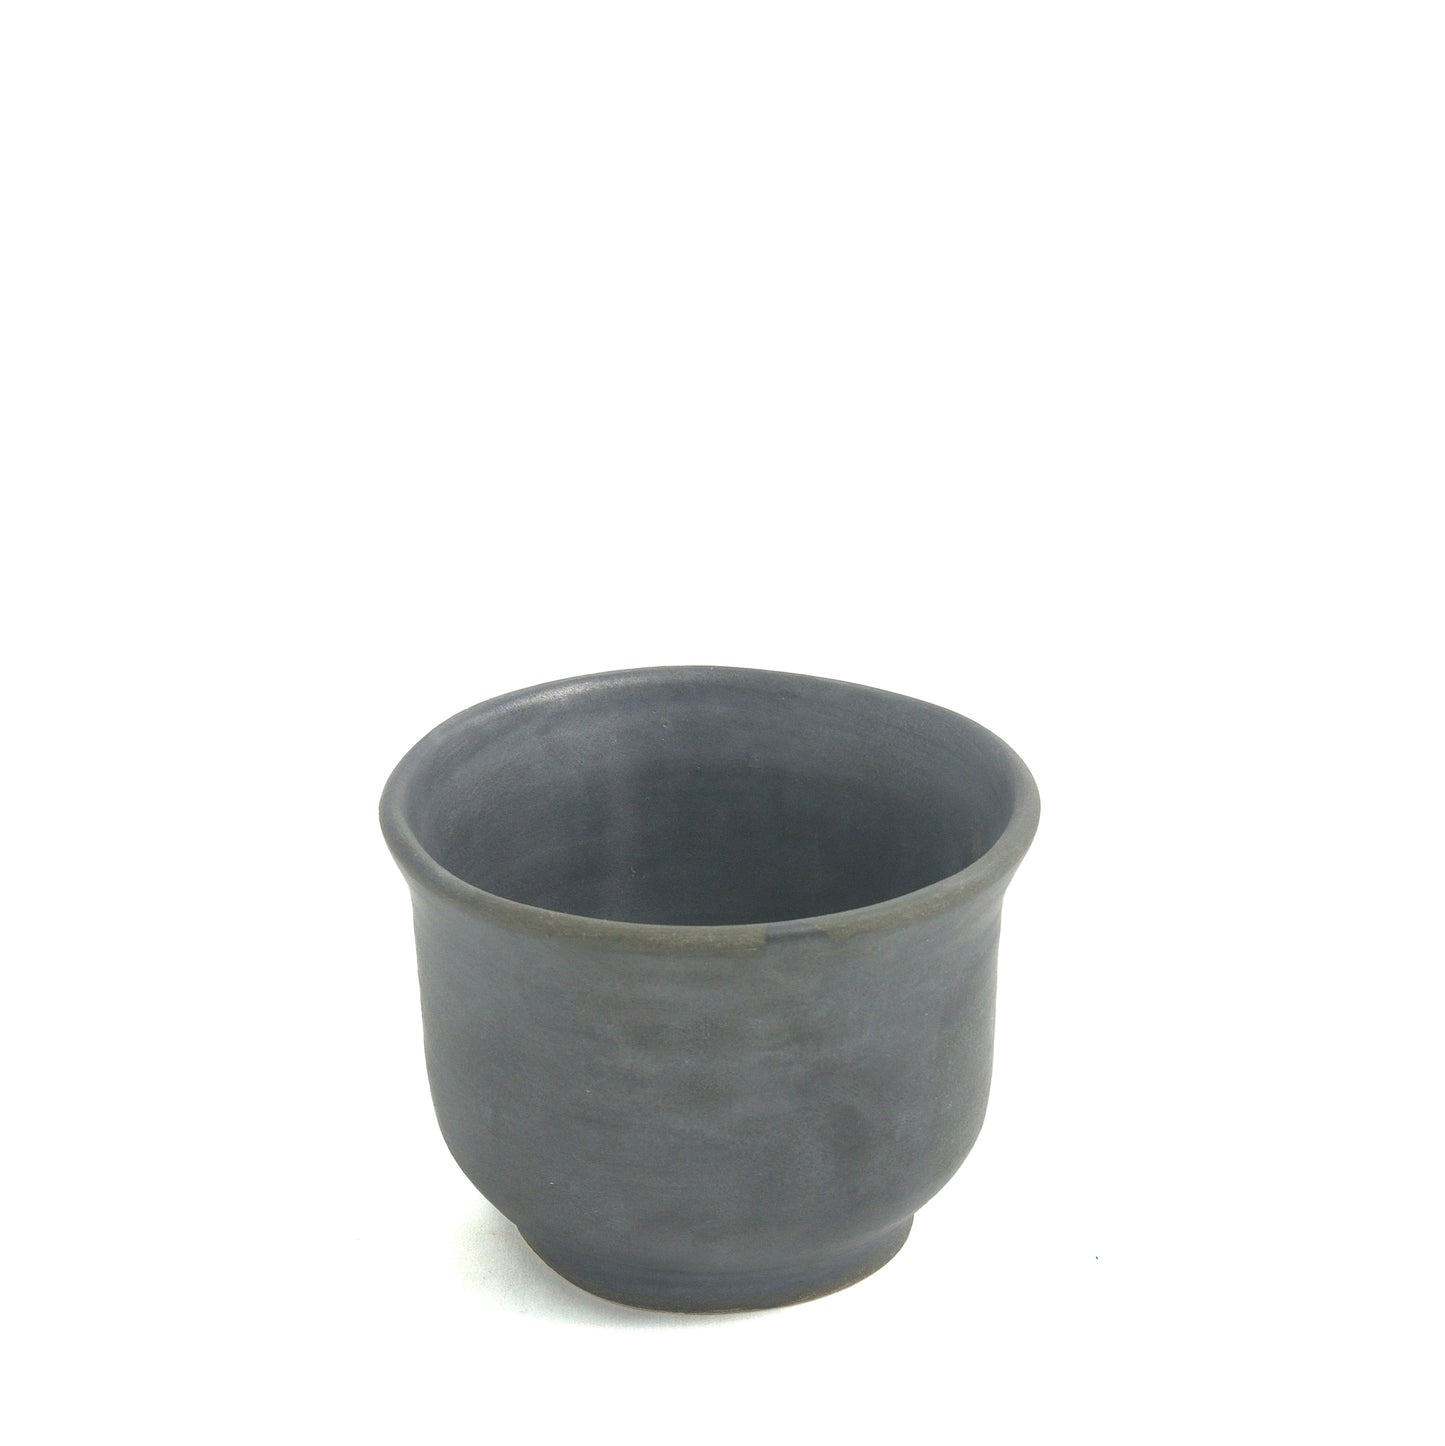 Japanese Minimalistic Earth Set of 3 Tea Cups Raku Ceramics Black Burnt